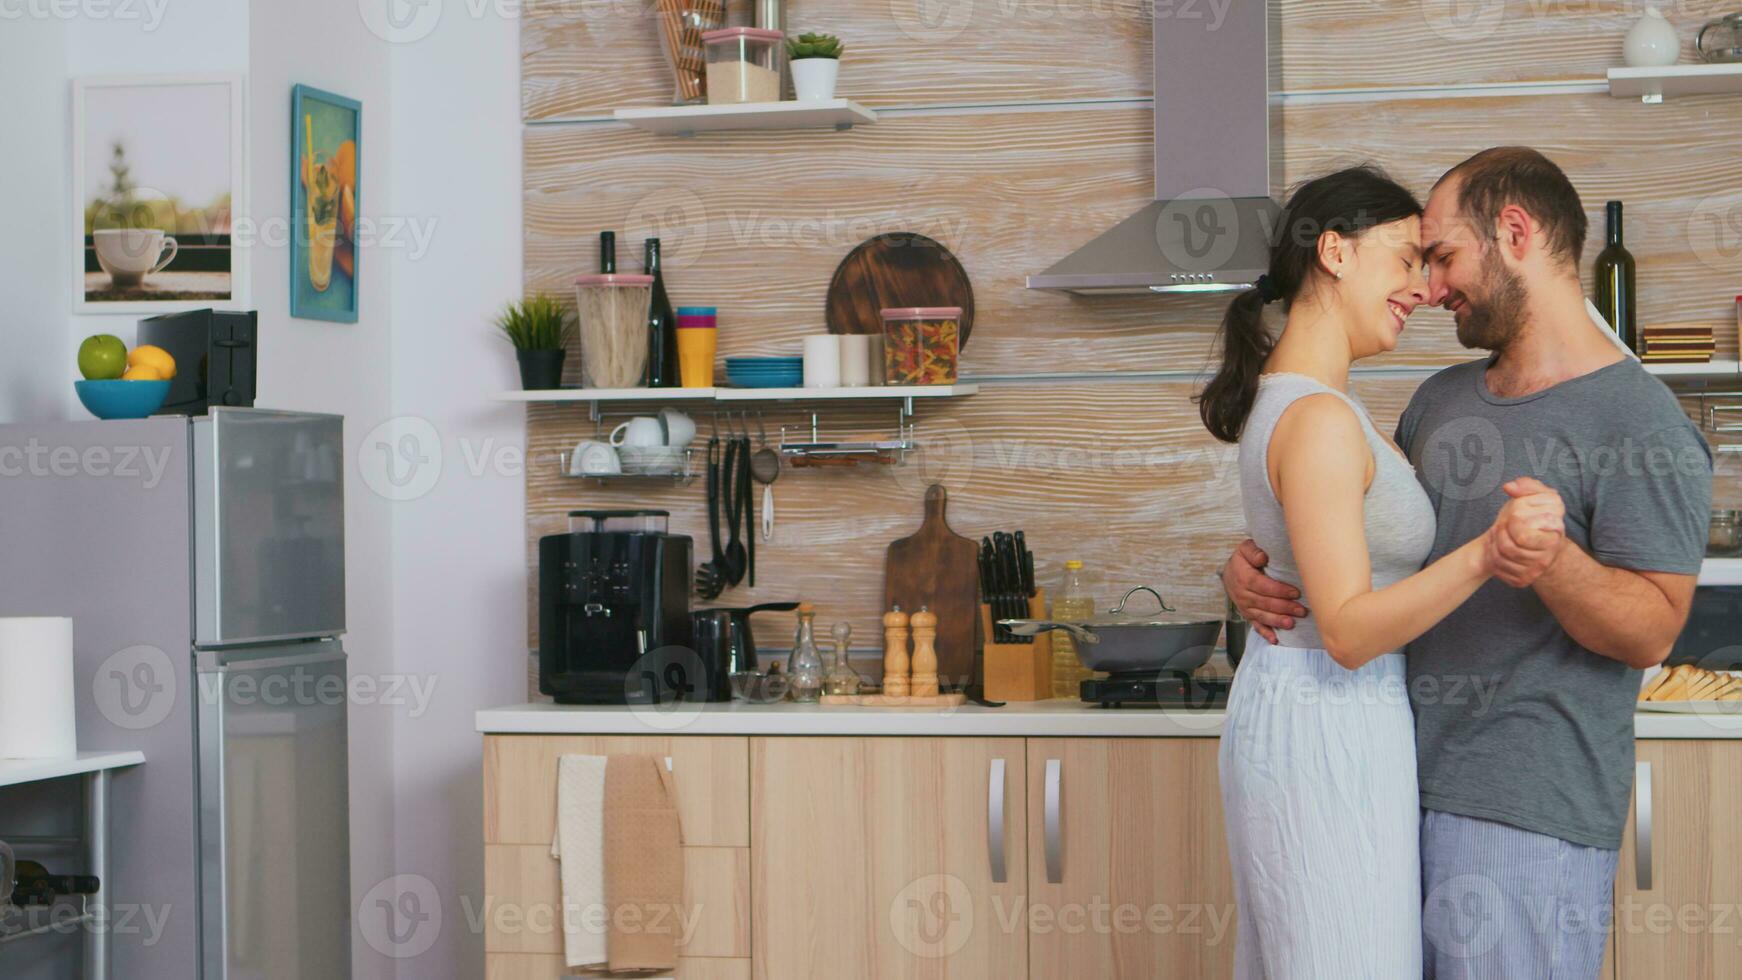 authentisch Paar schleppend Tanzen während Frühstück im Küche tragen Pyjama. romantisch Moment im zwei, tanzen und Hingabe, intim glücklich spielerisch Morgen zum jung Mann und Gattin, Umarmen jeder andere foto